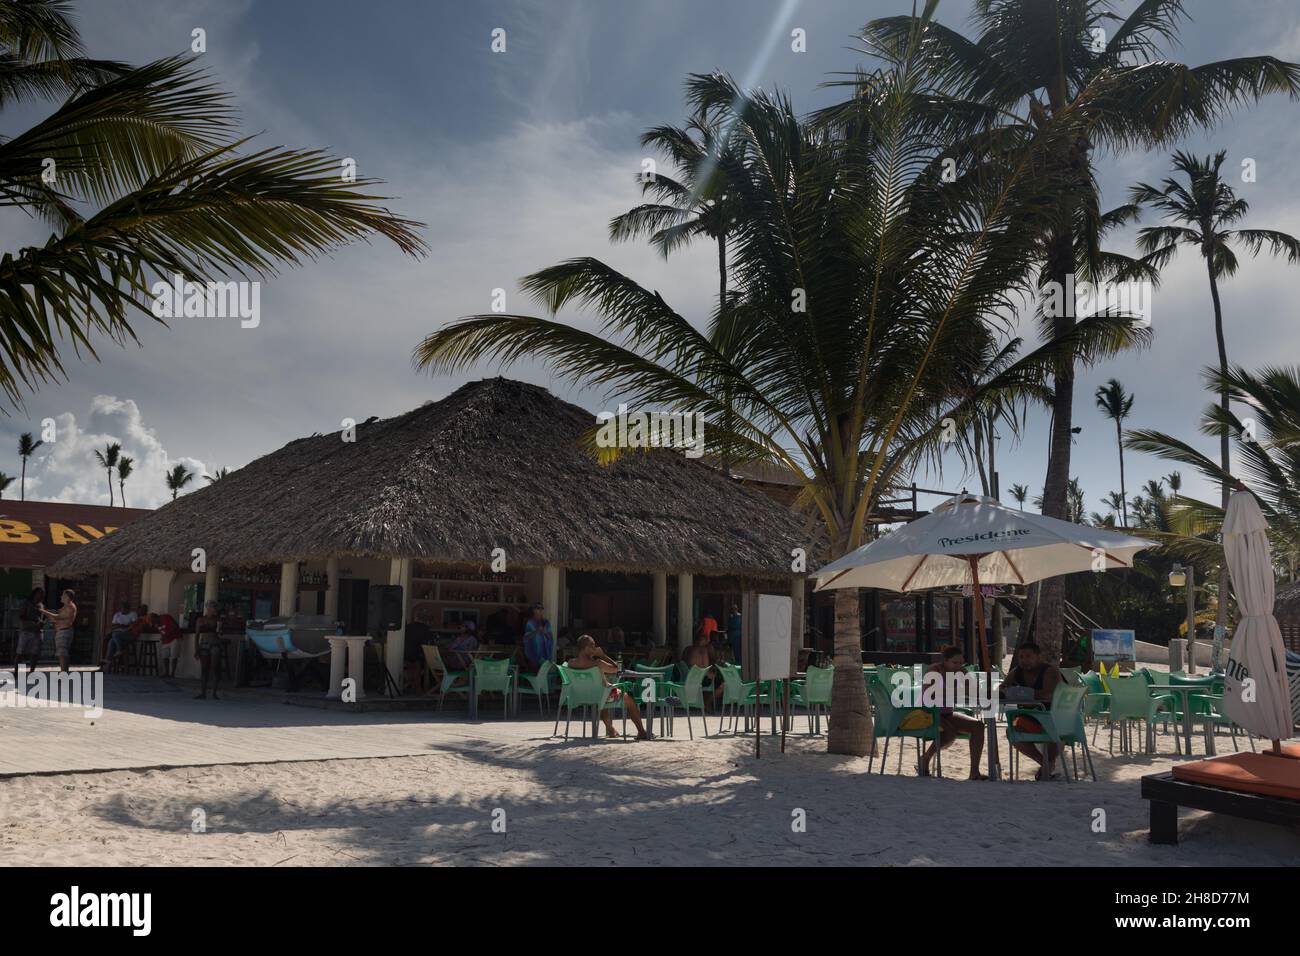 Beach bar in Punta Cana. Stock Photo